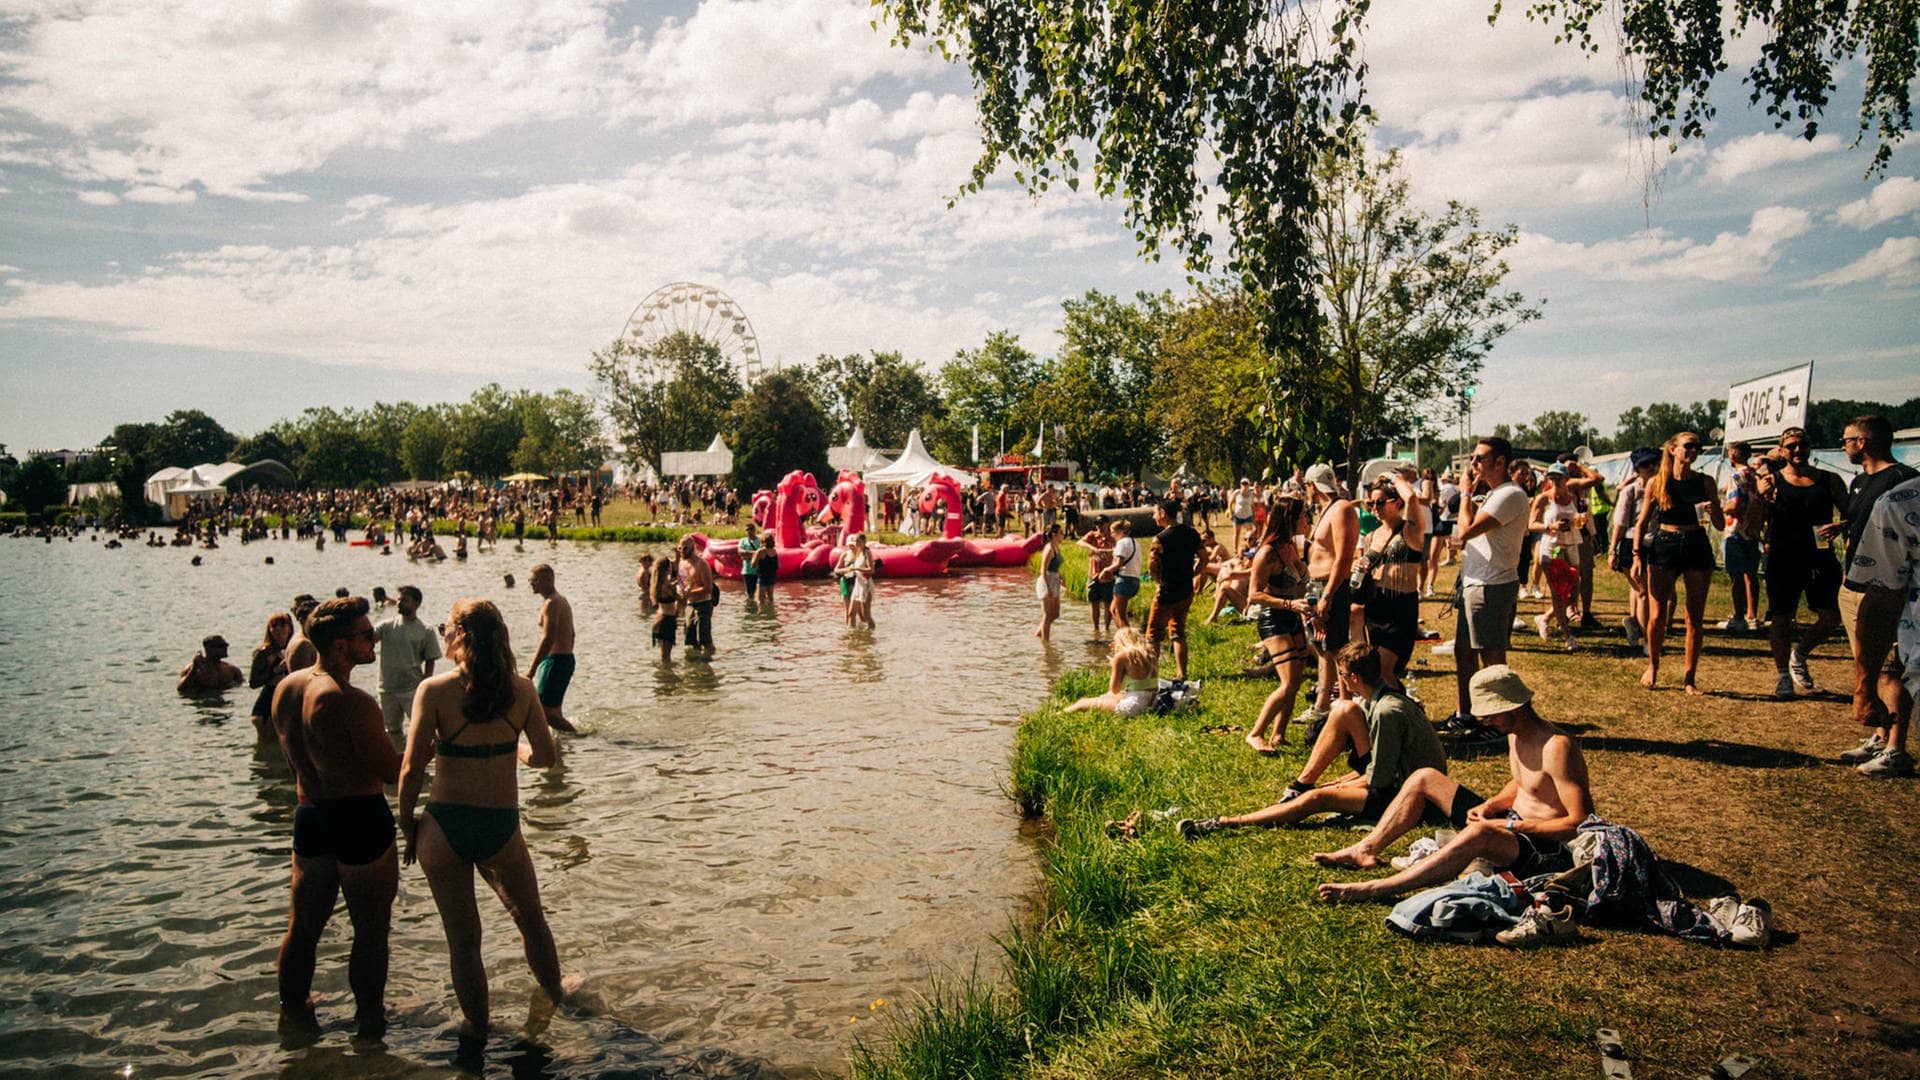 Das Sea You Festival 2023 am Tunisee in Freiburg: Mit 30 Grad bietet das Festival gleich zu Beginn einen wunderschönen Sommertag für die Besucher. (Foto: SWR, Nico Neithardt)